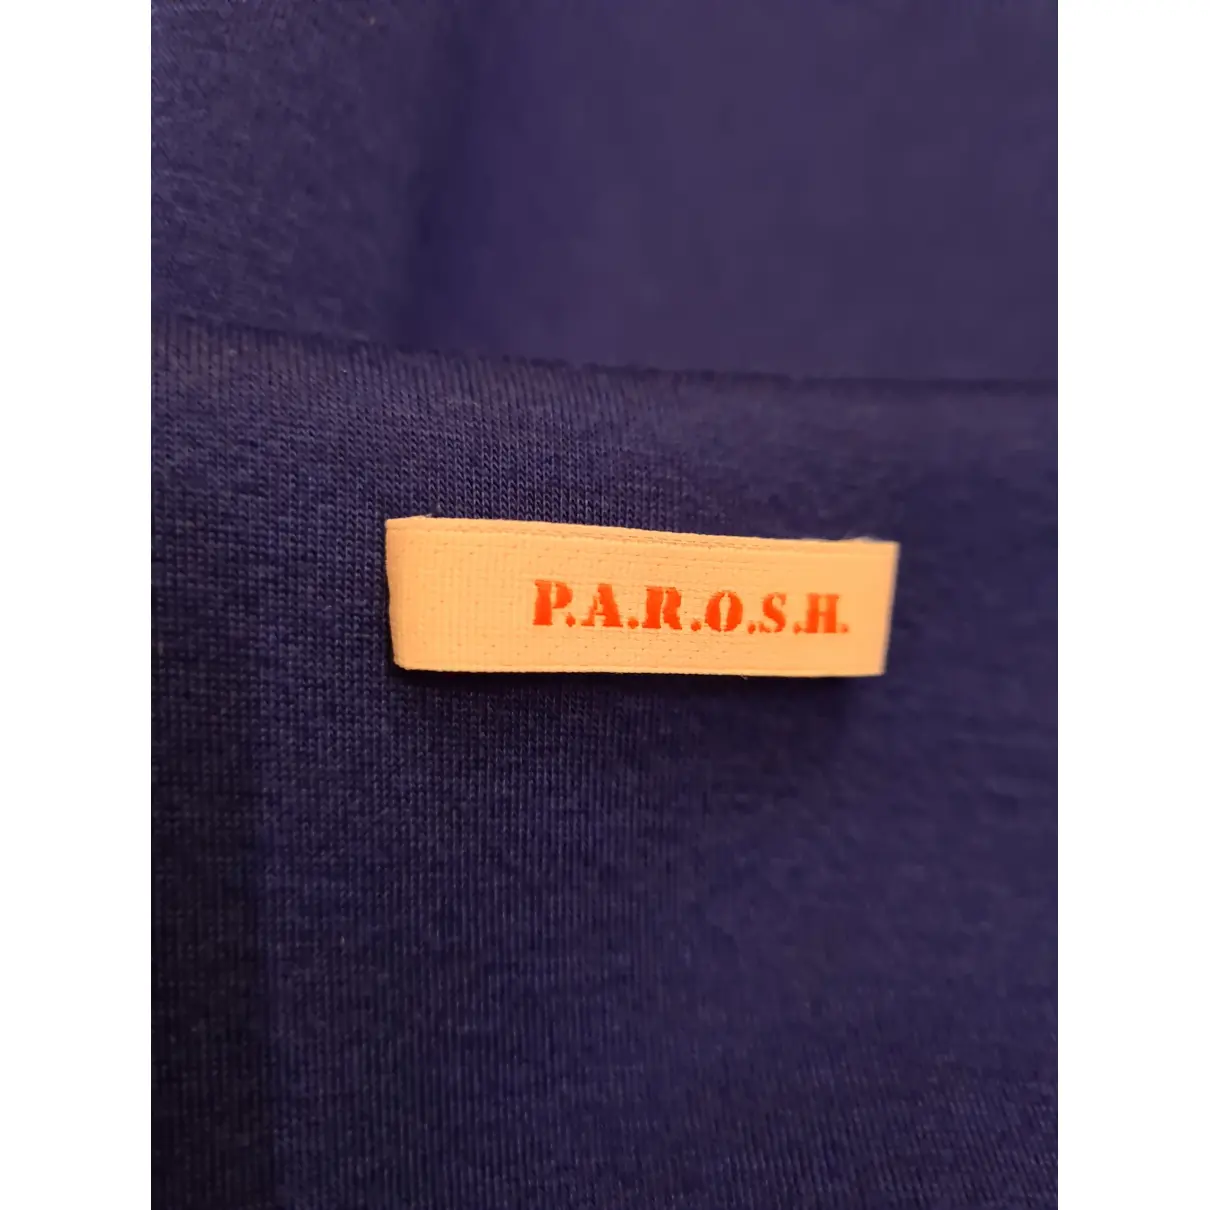 Coat Parosh